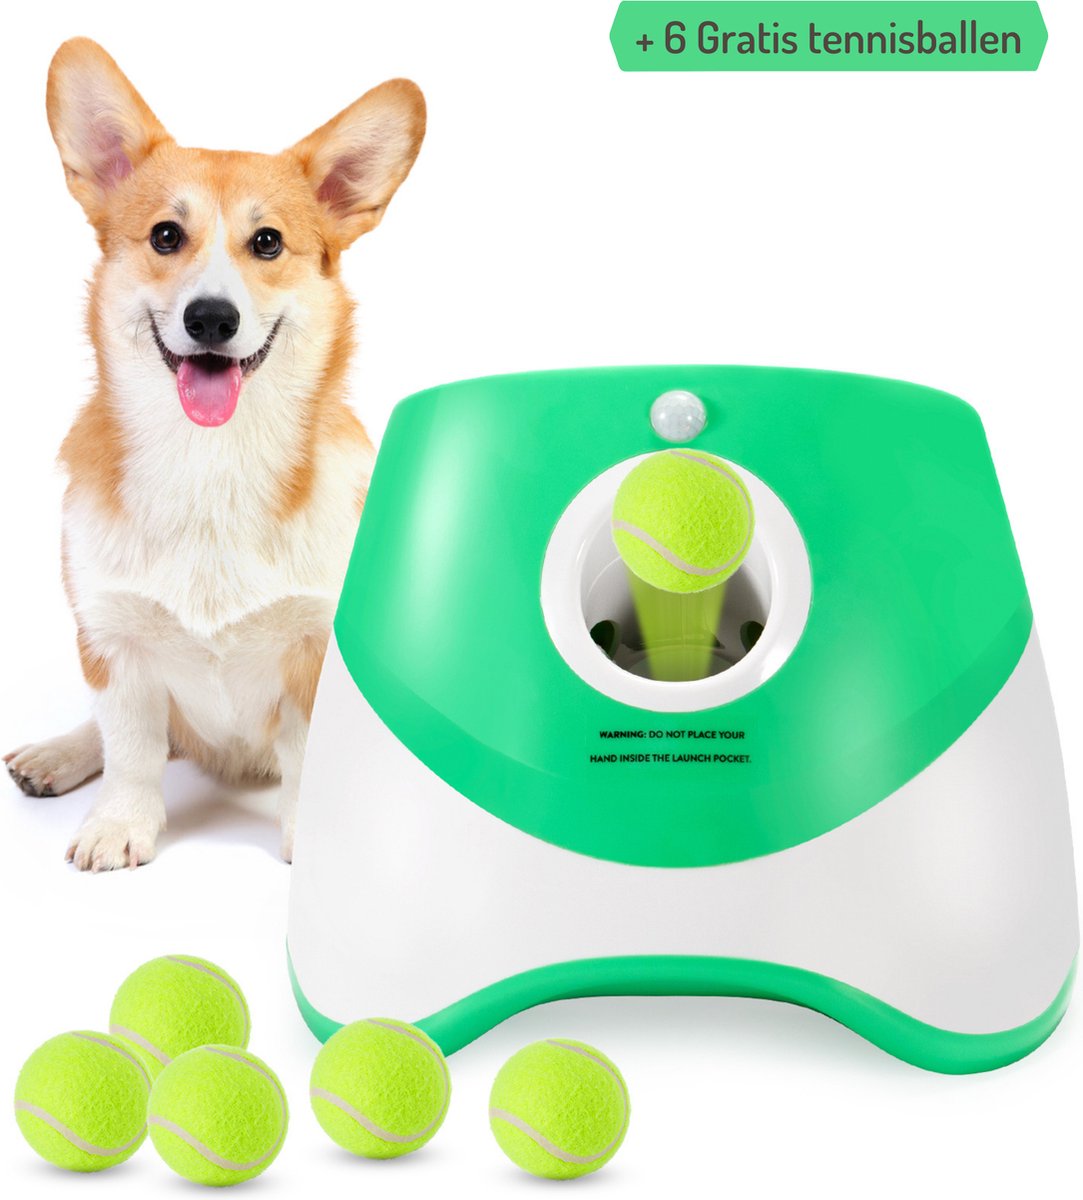 PeddyPal Ballenwerper voor honden - Ballenwerper automatisch - Honden Speelgoed - Ballenwerper - Groen - Oplaadbaar - Schiet tot 10 meter - Gratis 6 tennisballetjes - Apporteer speelgoed - Dierendag